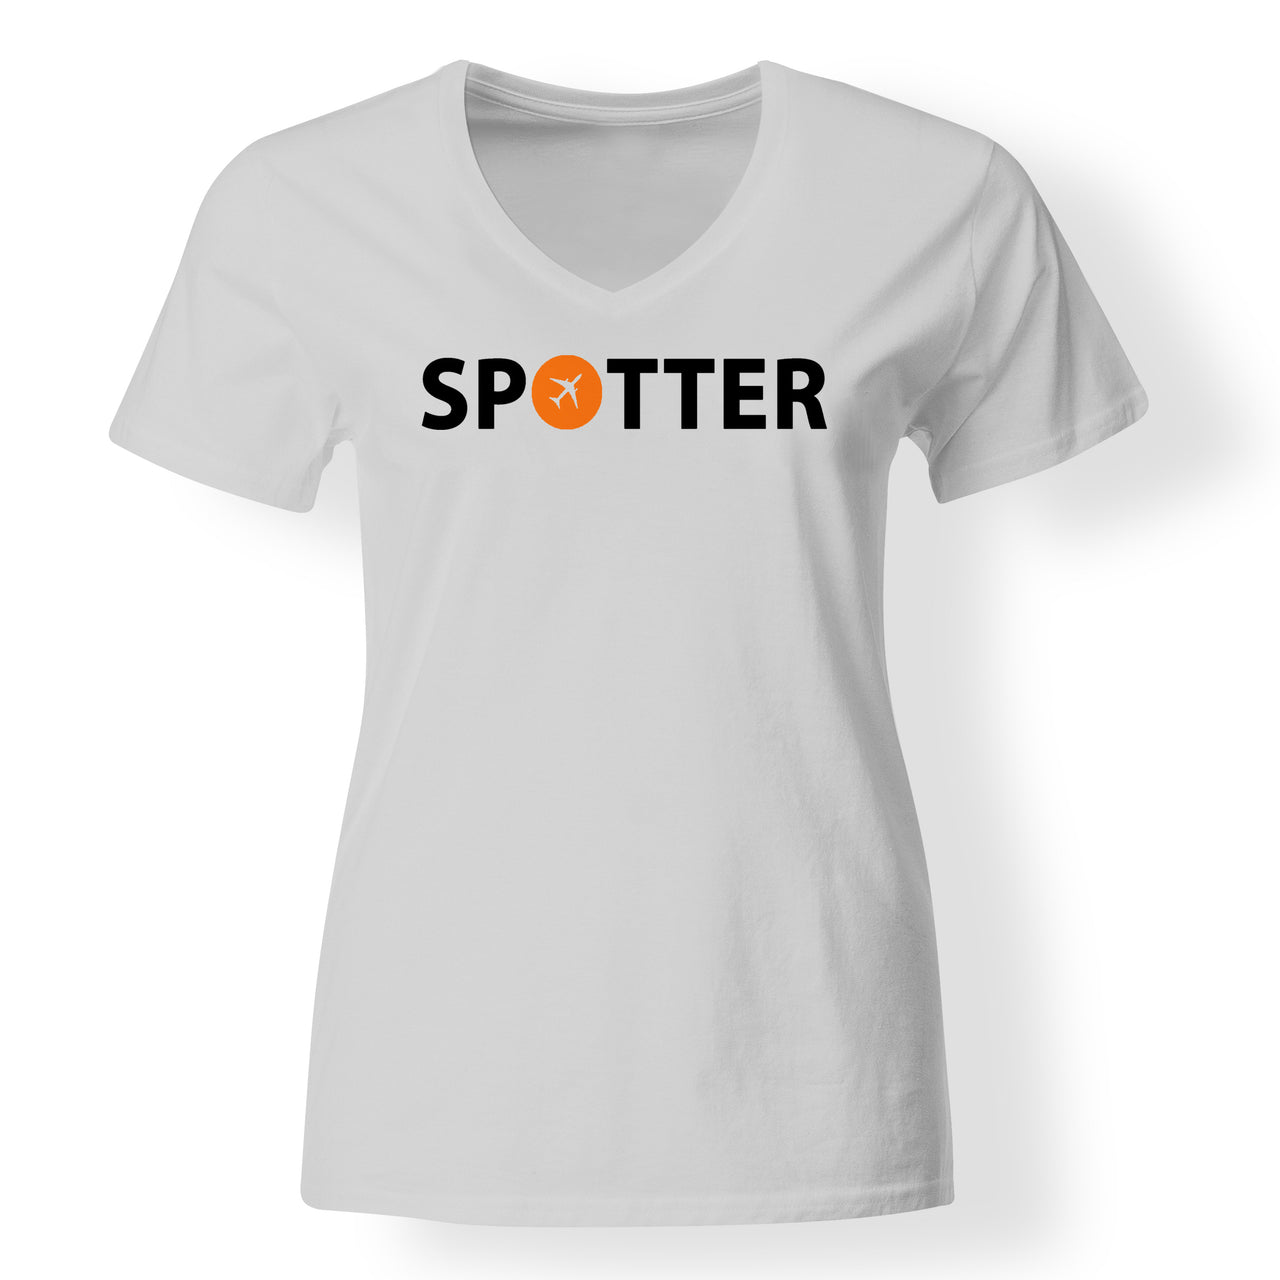 Spotter Designed V-Neck T-Shirts